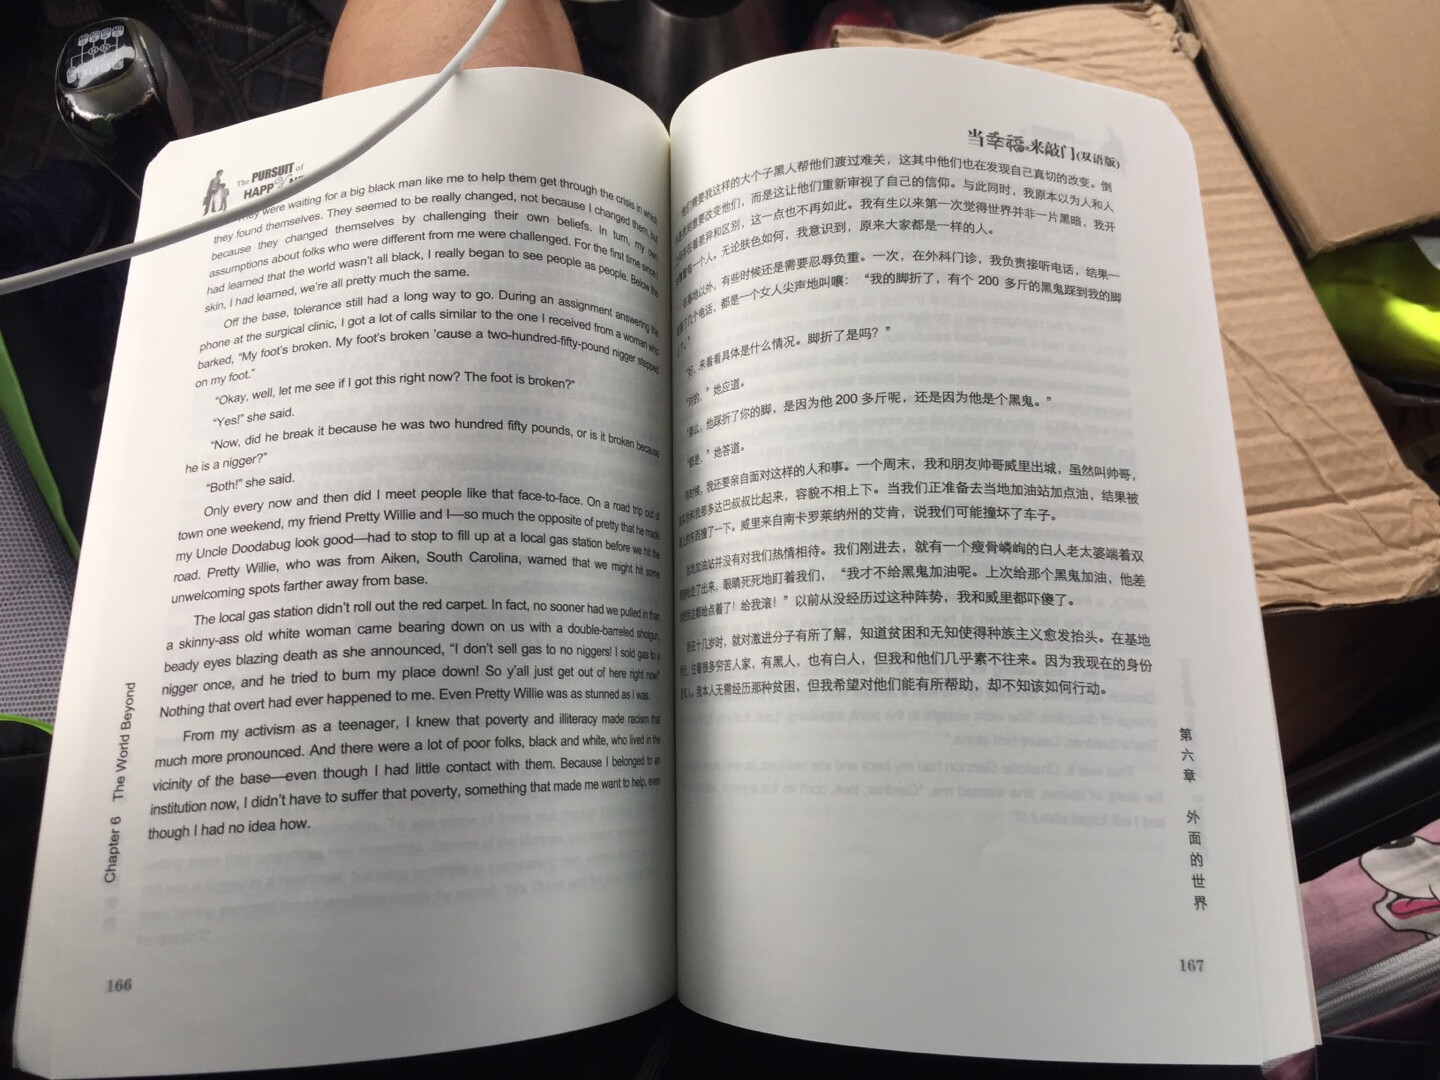 书本是挺大的一本，字体印刷清晰明辨，左面一页是英文，右边一页是中文，适合学习的小伙伴，书本质量可以，就是书本身材大了点儿，在家看还好，带在外面看有点不太方便！